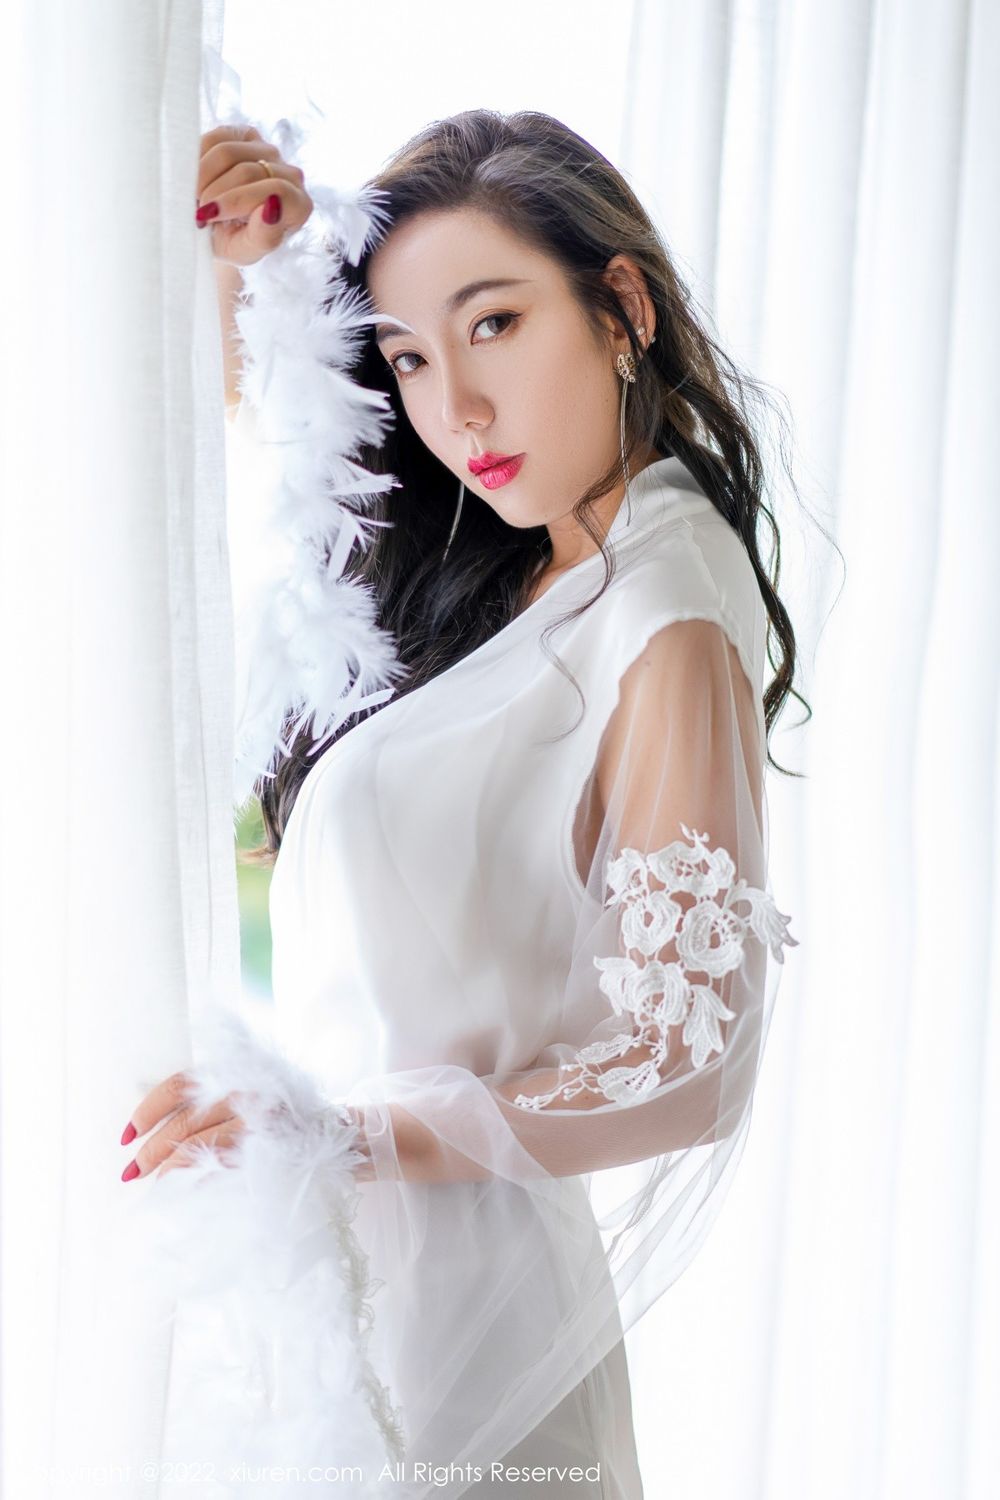 美女模特艾静香白色礼服搭配白色高跟系列三亚旅拍